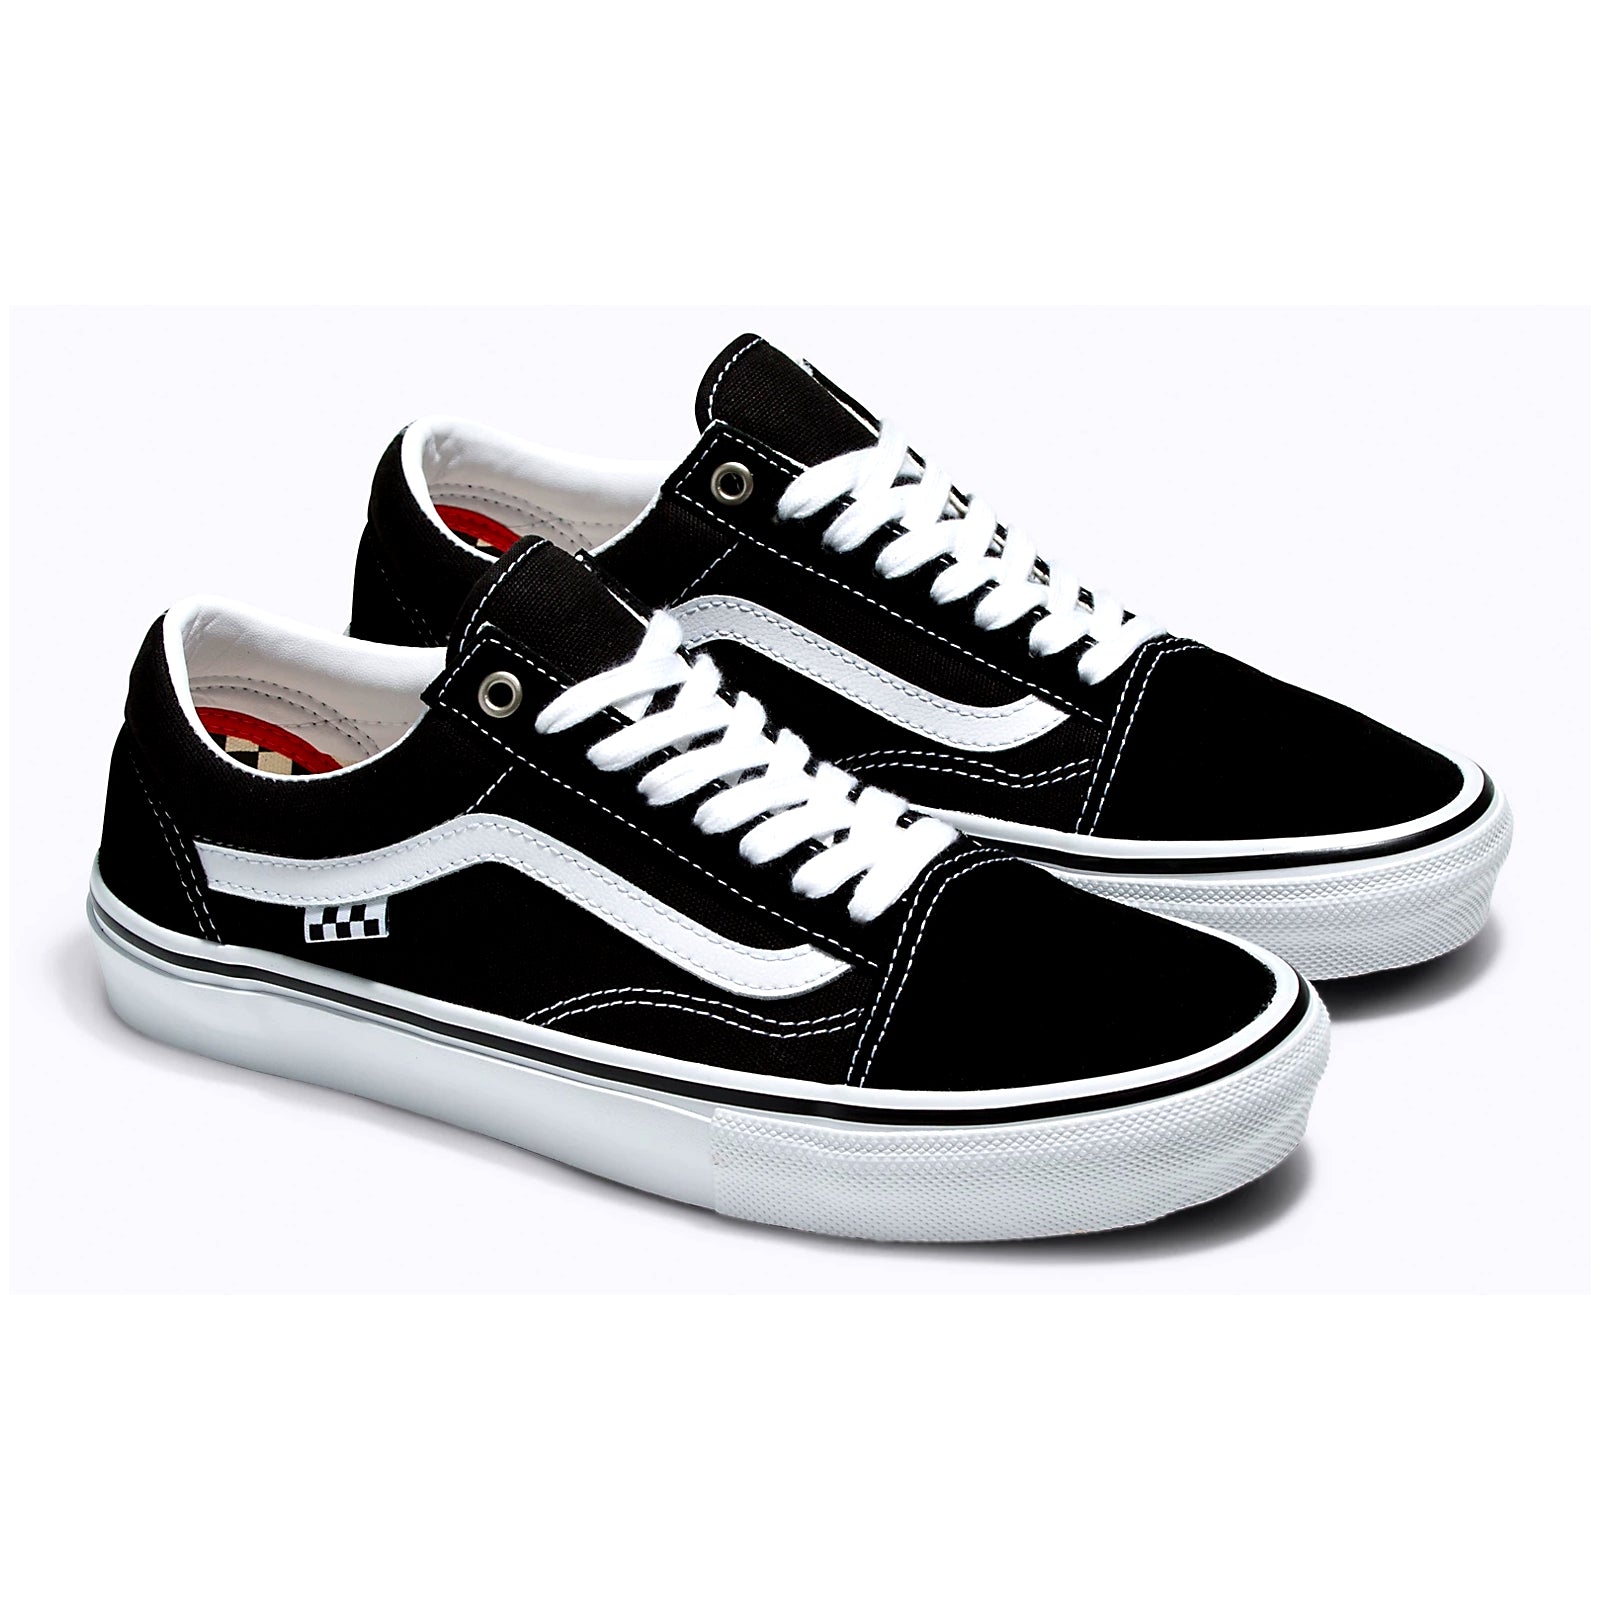 Black/White Skate Old Skool Vans Skateboard Shoe